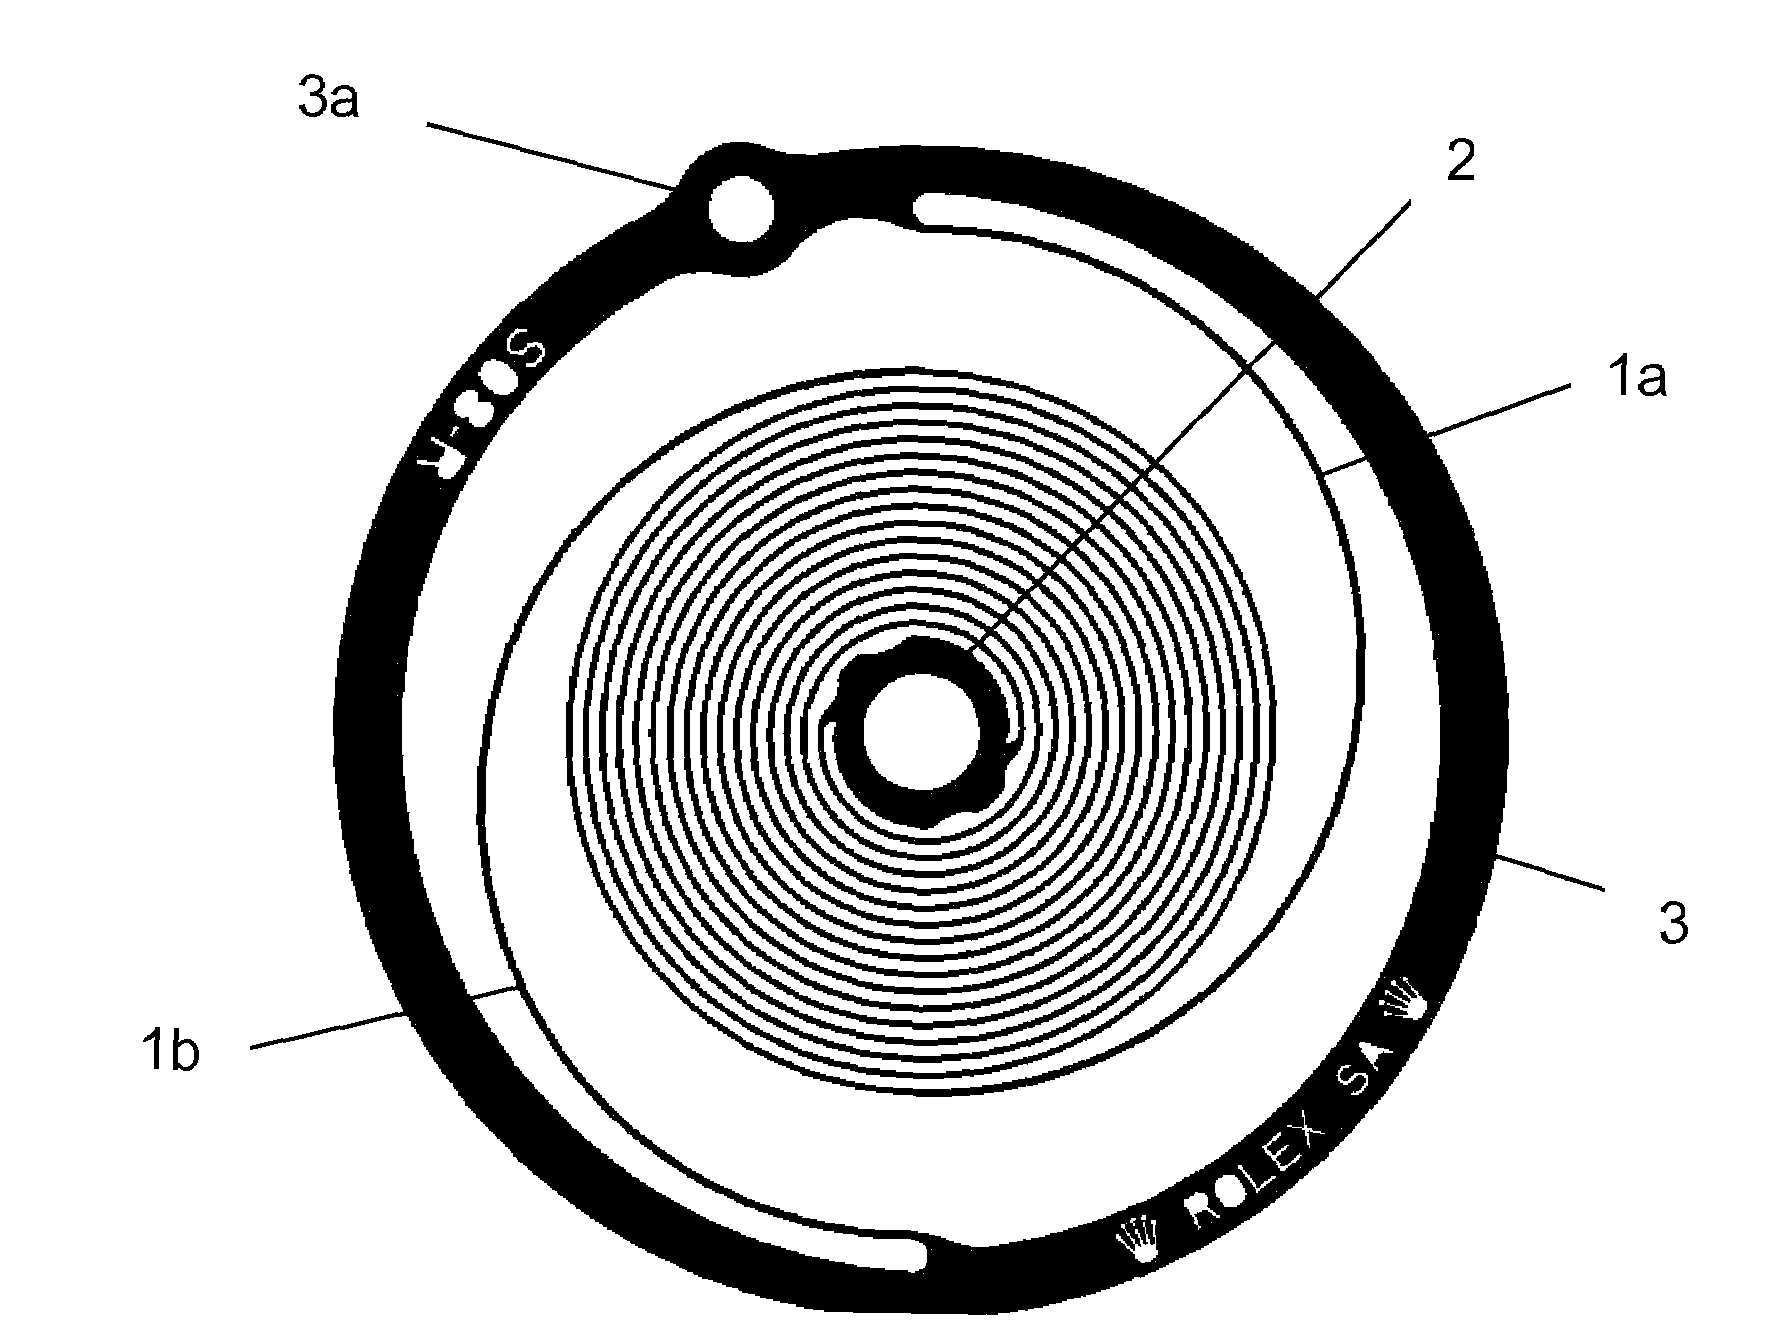 Hairspring for a balance wheel/hairspring resonator